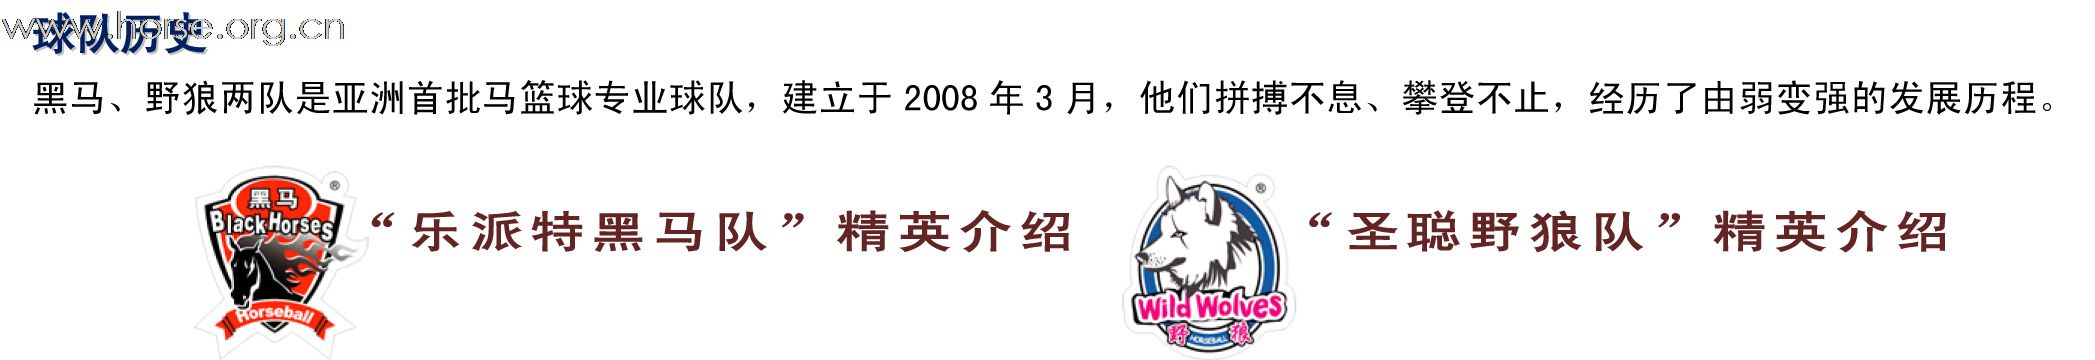 马篮球 “圣聪杯” - 上海乐派特站  2011.04.23